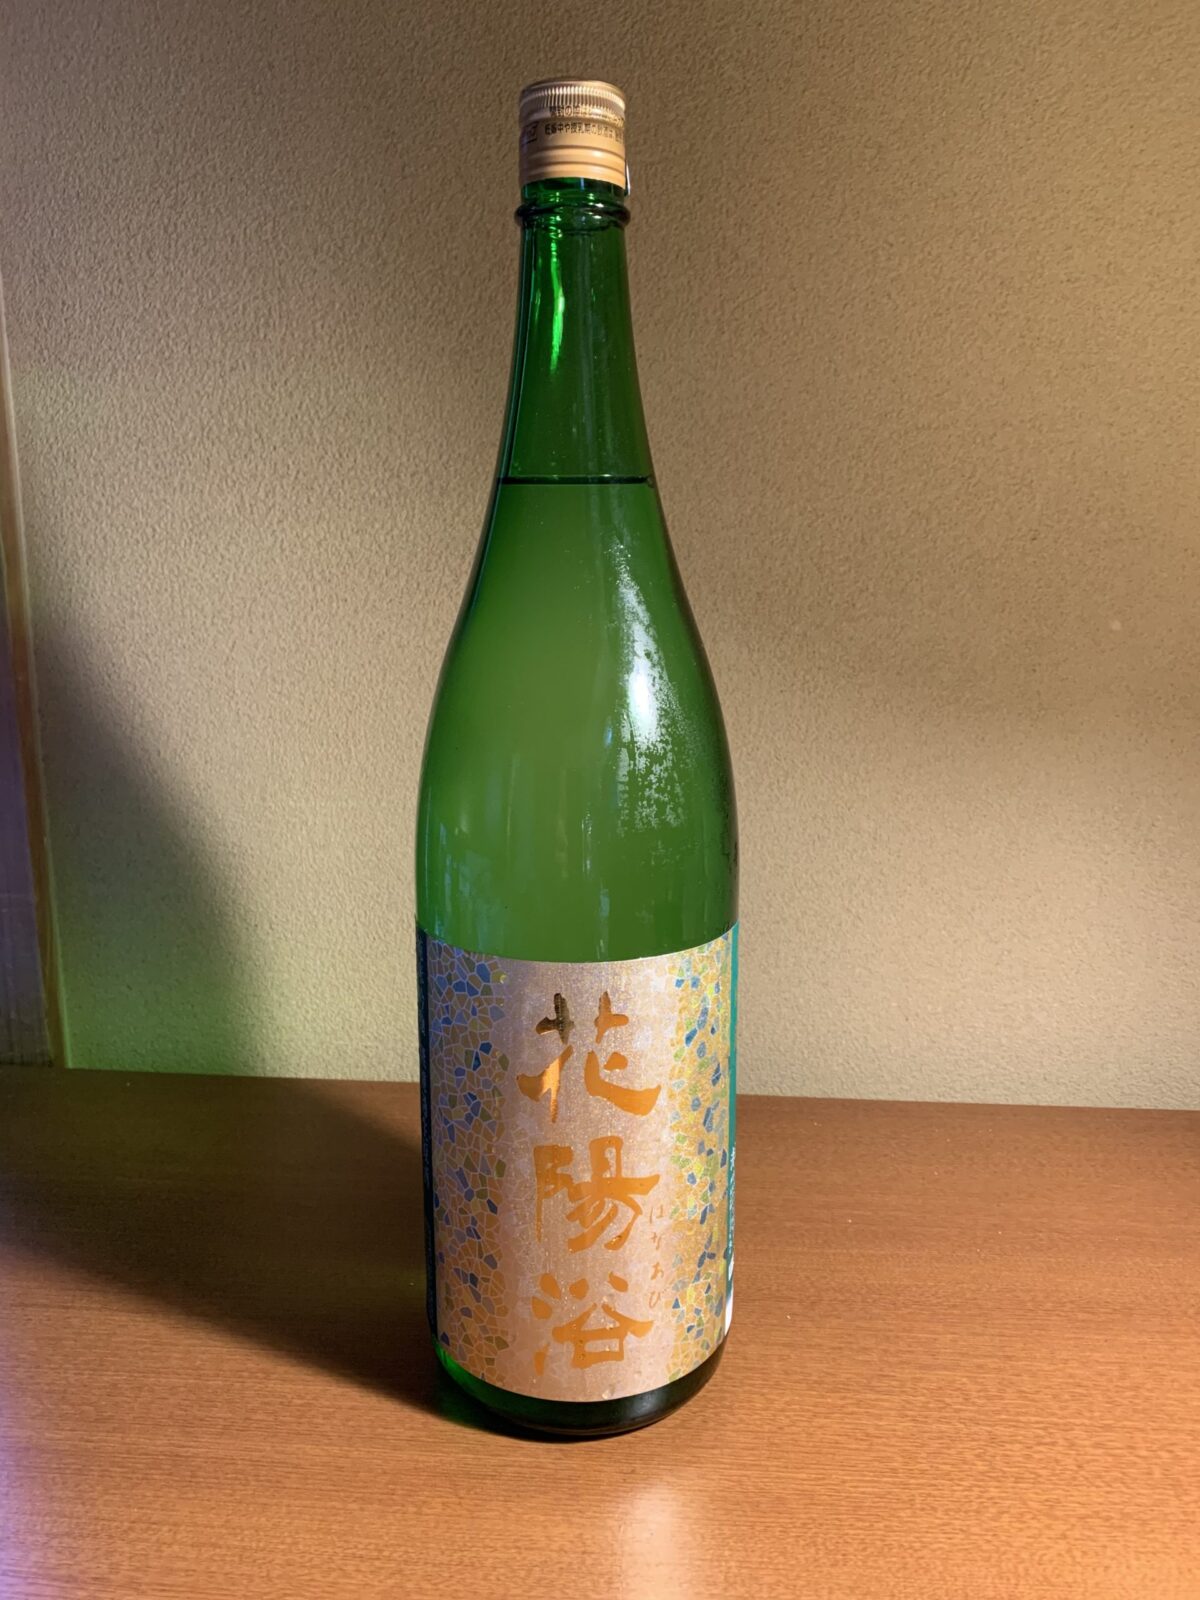 埼玉の日本酒『花陽浴 美山錦 』は新酒の香りと芳醇甘旨な味わい | 日本酒探訪